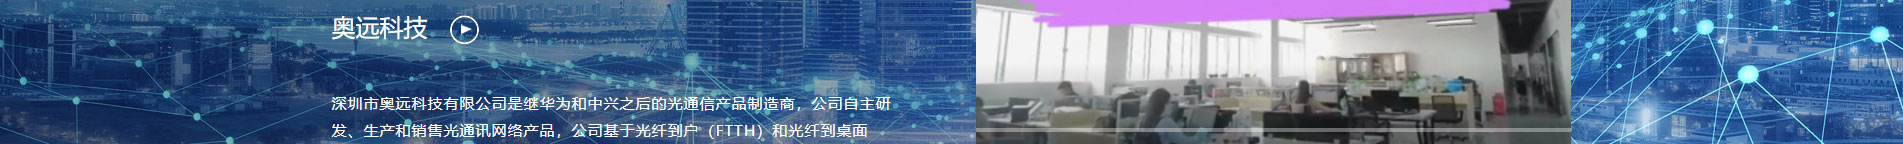 奥远科技_公司网站建设_企业网站建设_深圳网站设计